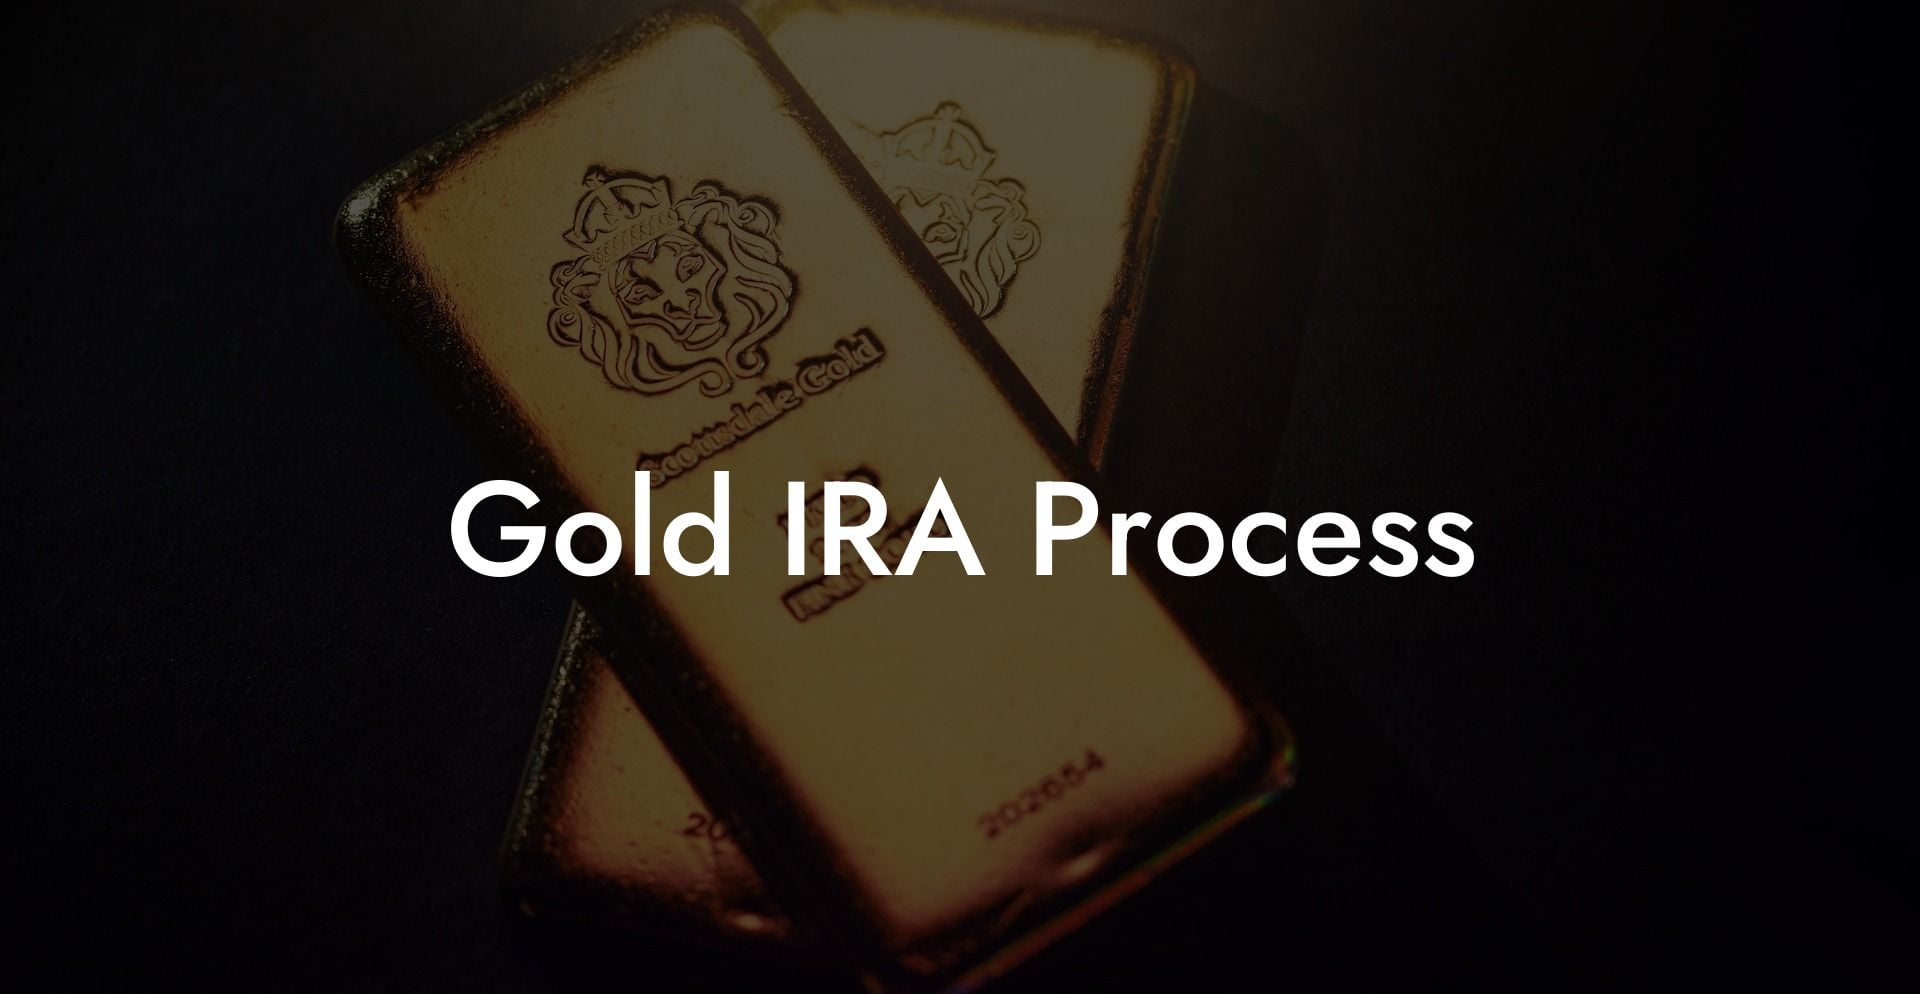 Gold IRA Process